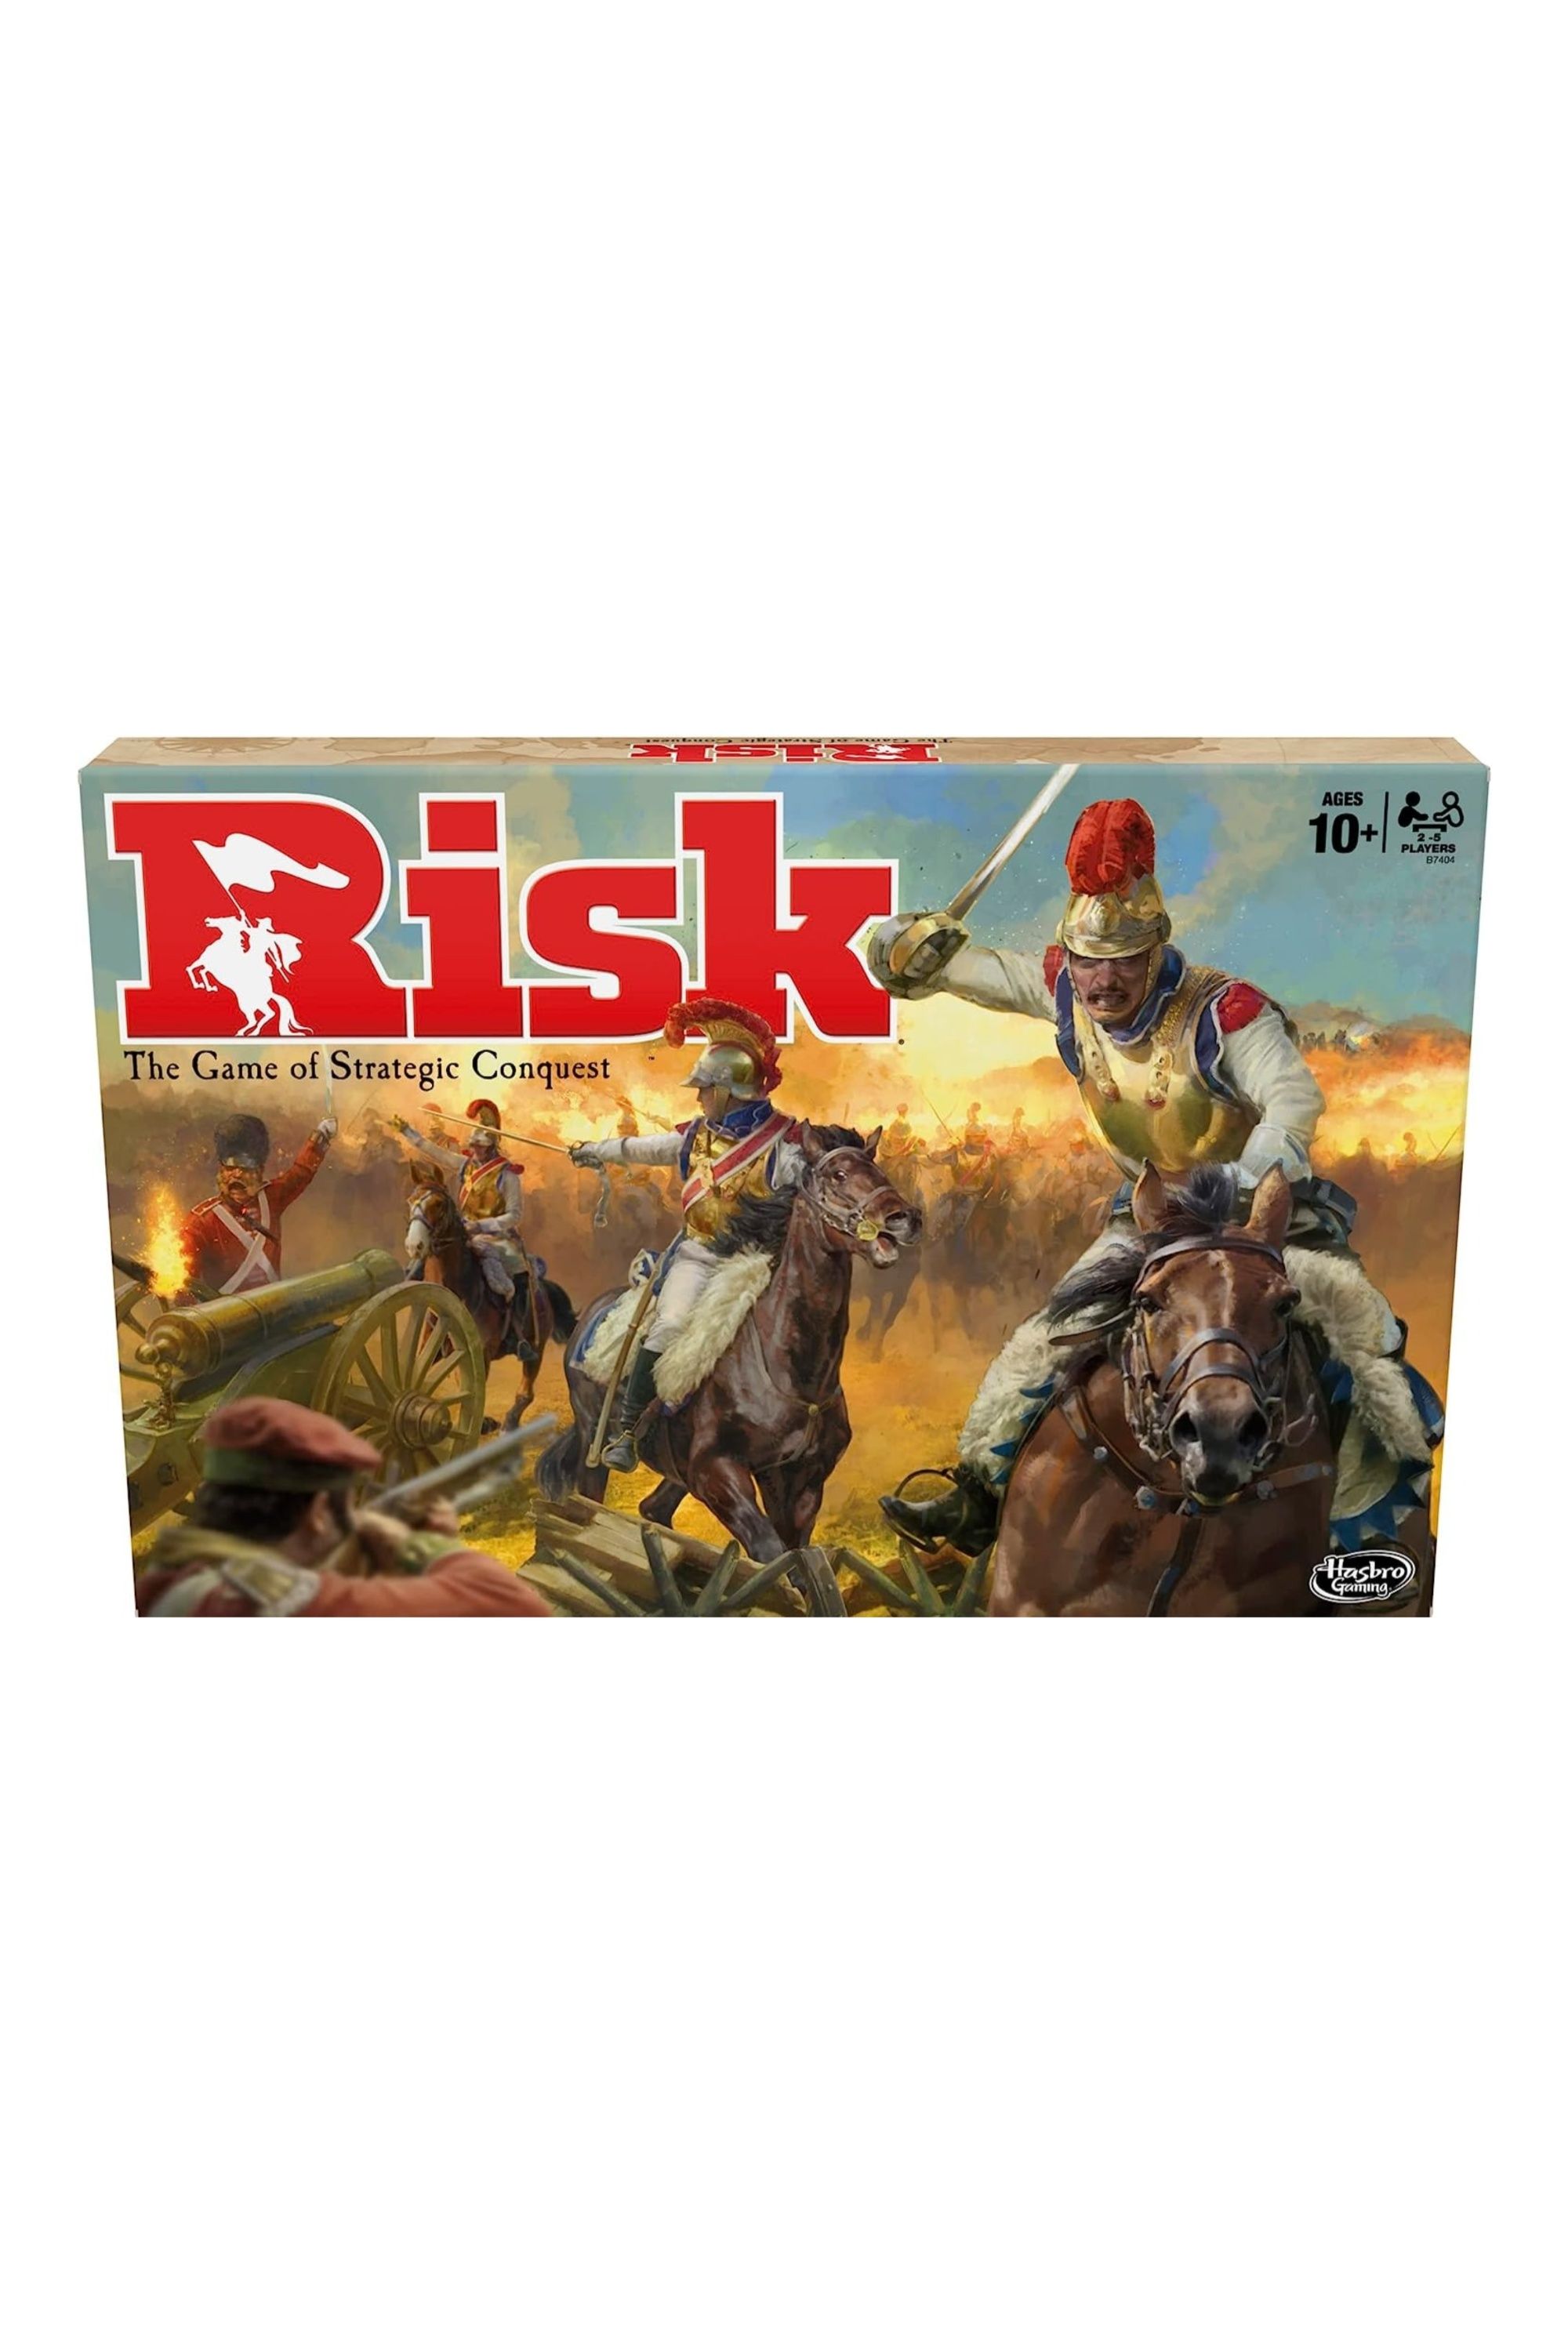 Risk board game box